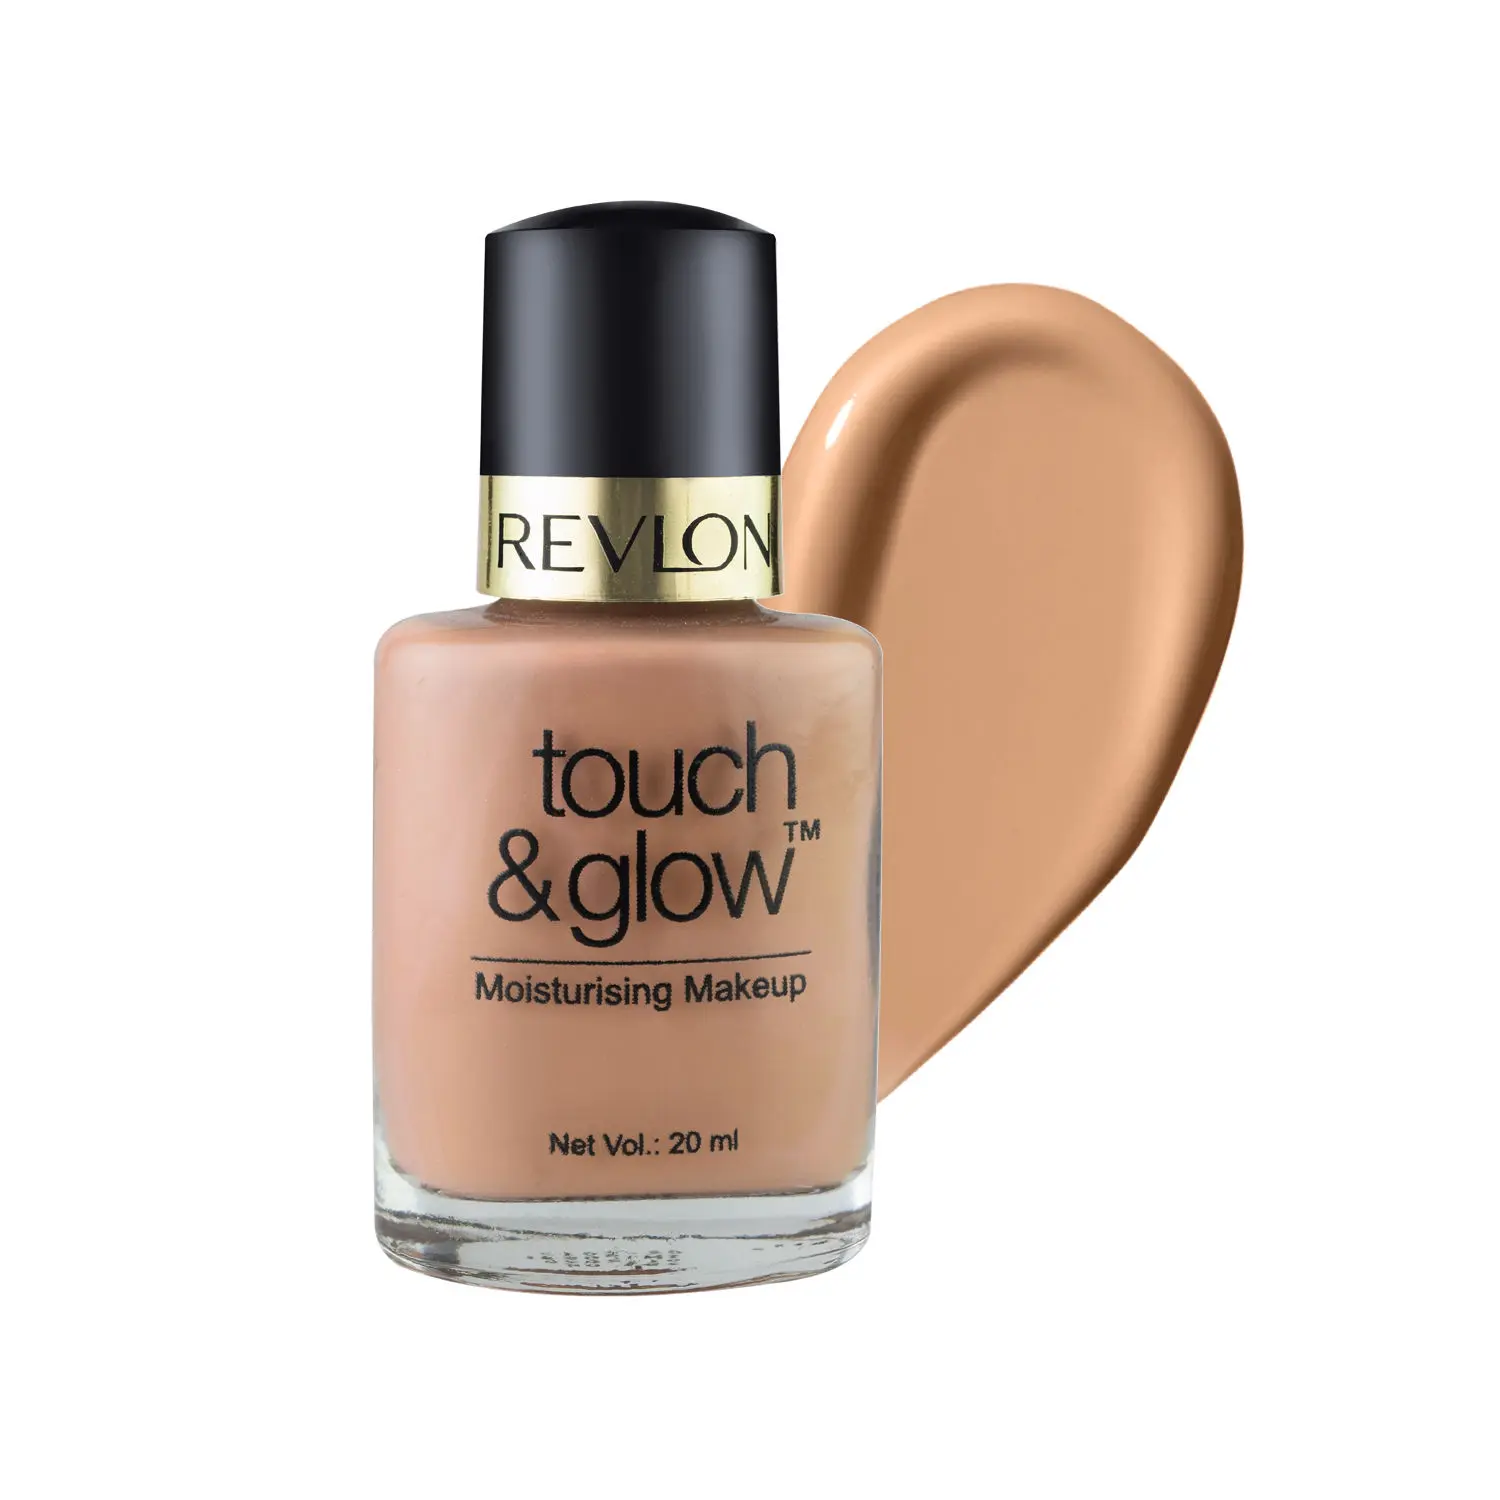 Revlon Touch & Glow Makeup - Rich Mist